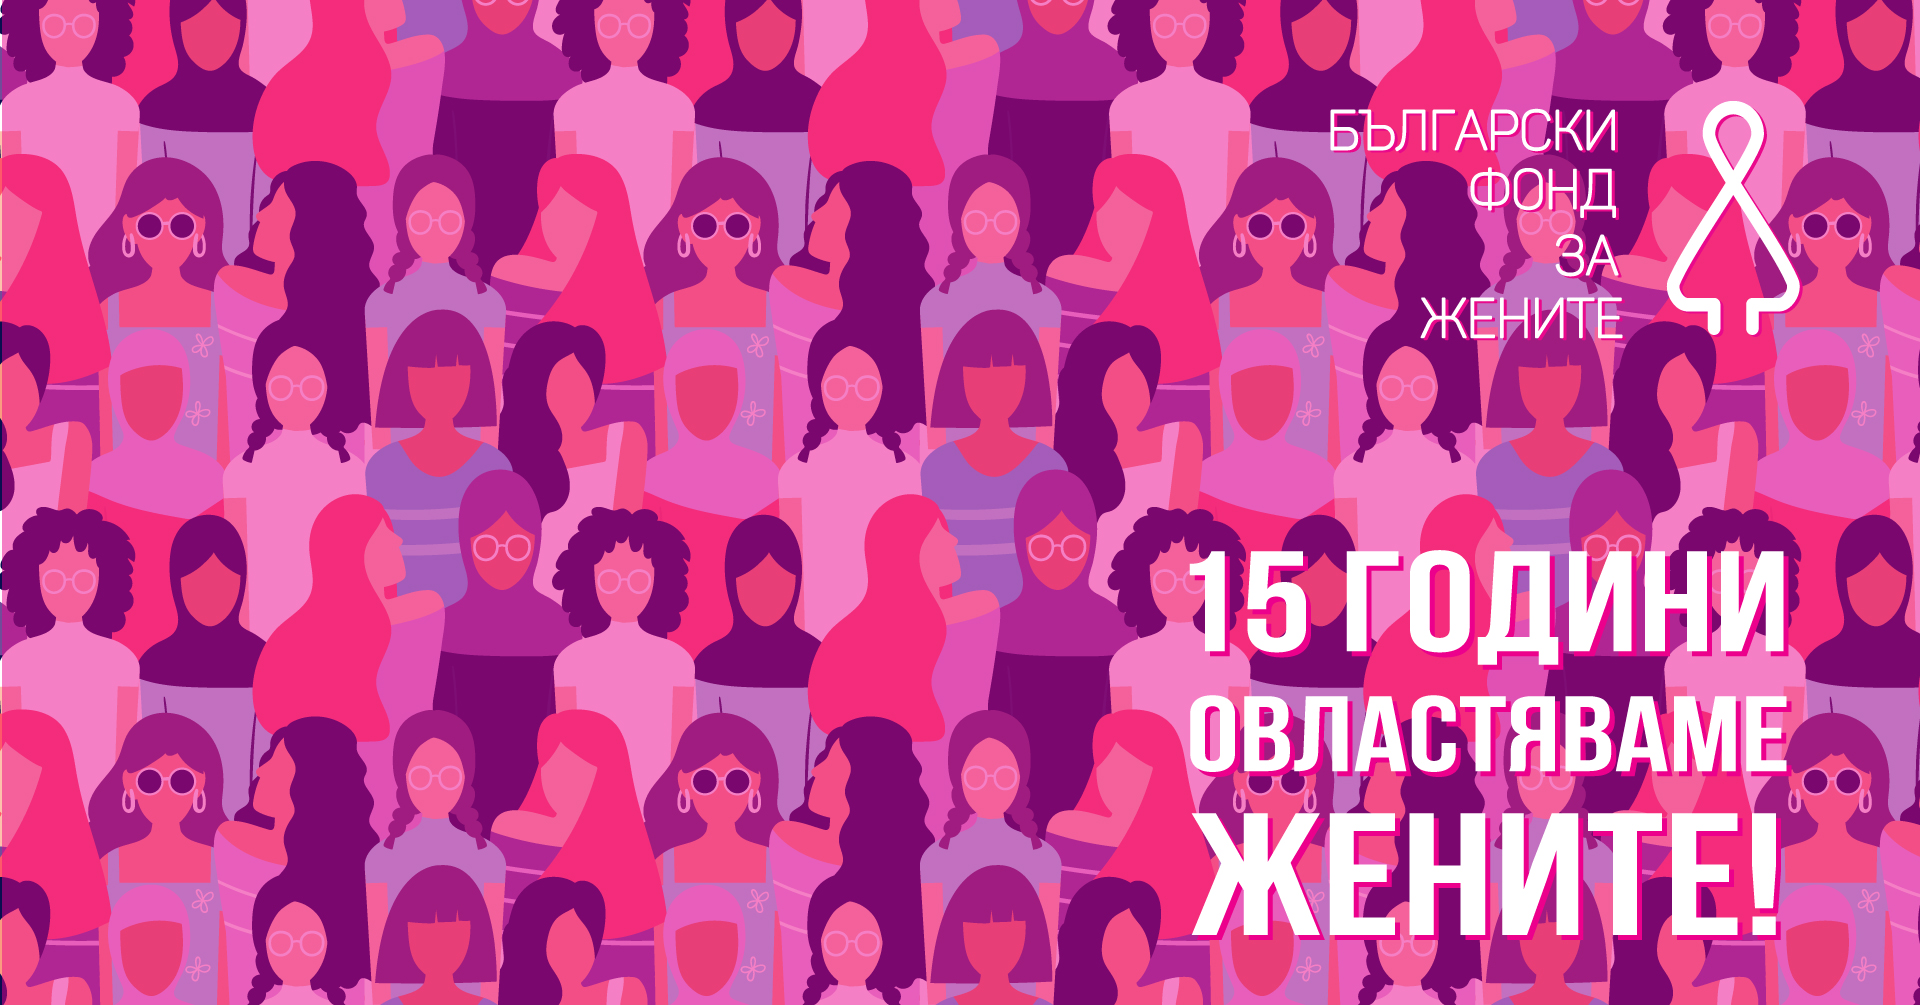 8 март: Повод да поговорим за правата и равнопоставеността на жените в България